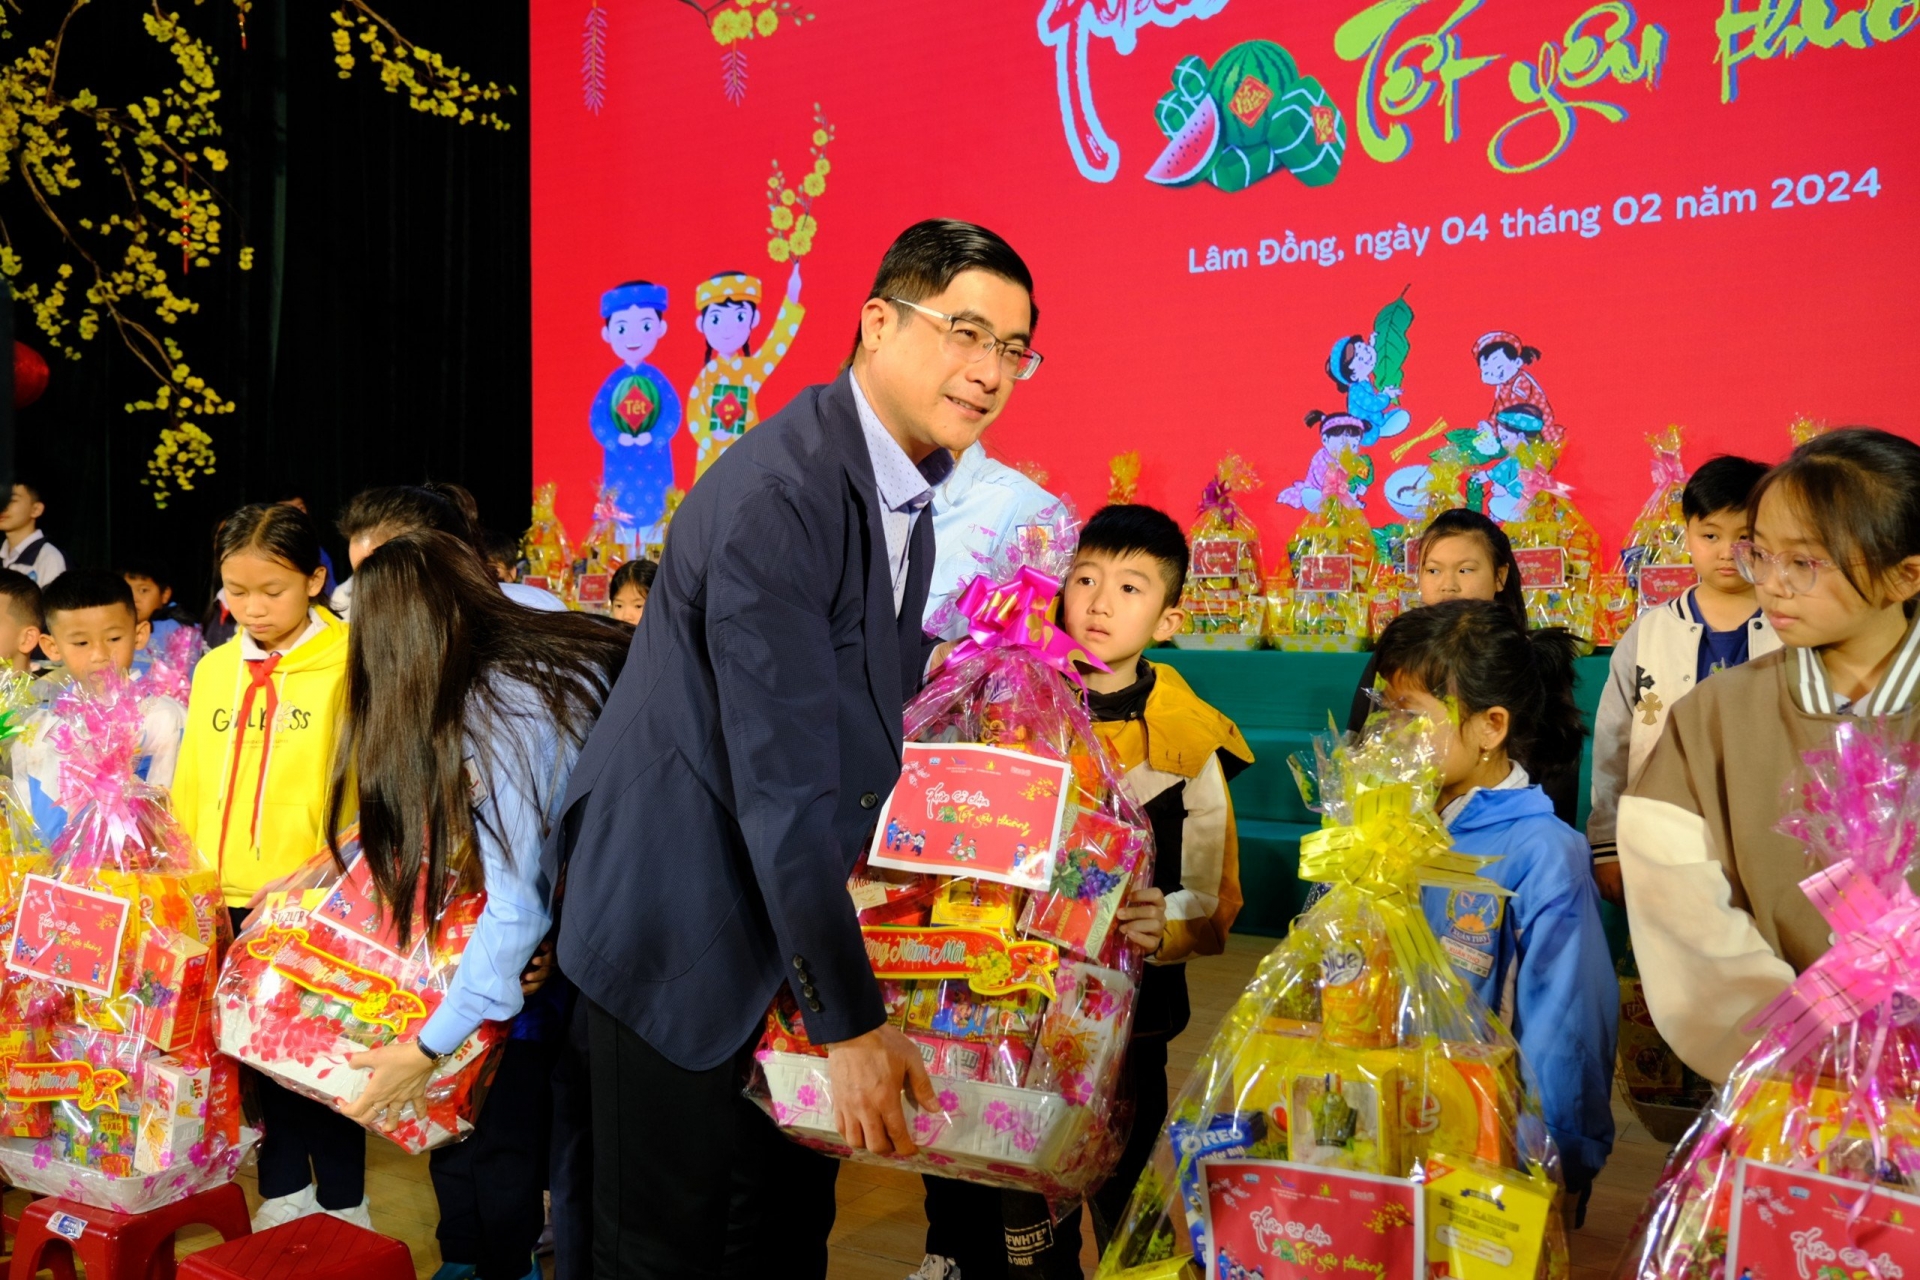 Đồng chí Nguyễn Khắc Bình - Tỉnh ủy viên, Phó Chủ tịch HĐND tỉnh tặng quà Tết cho các em thiếu nhi